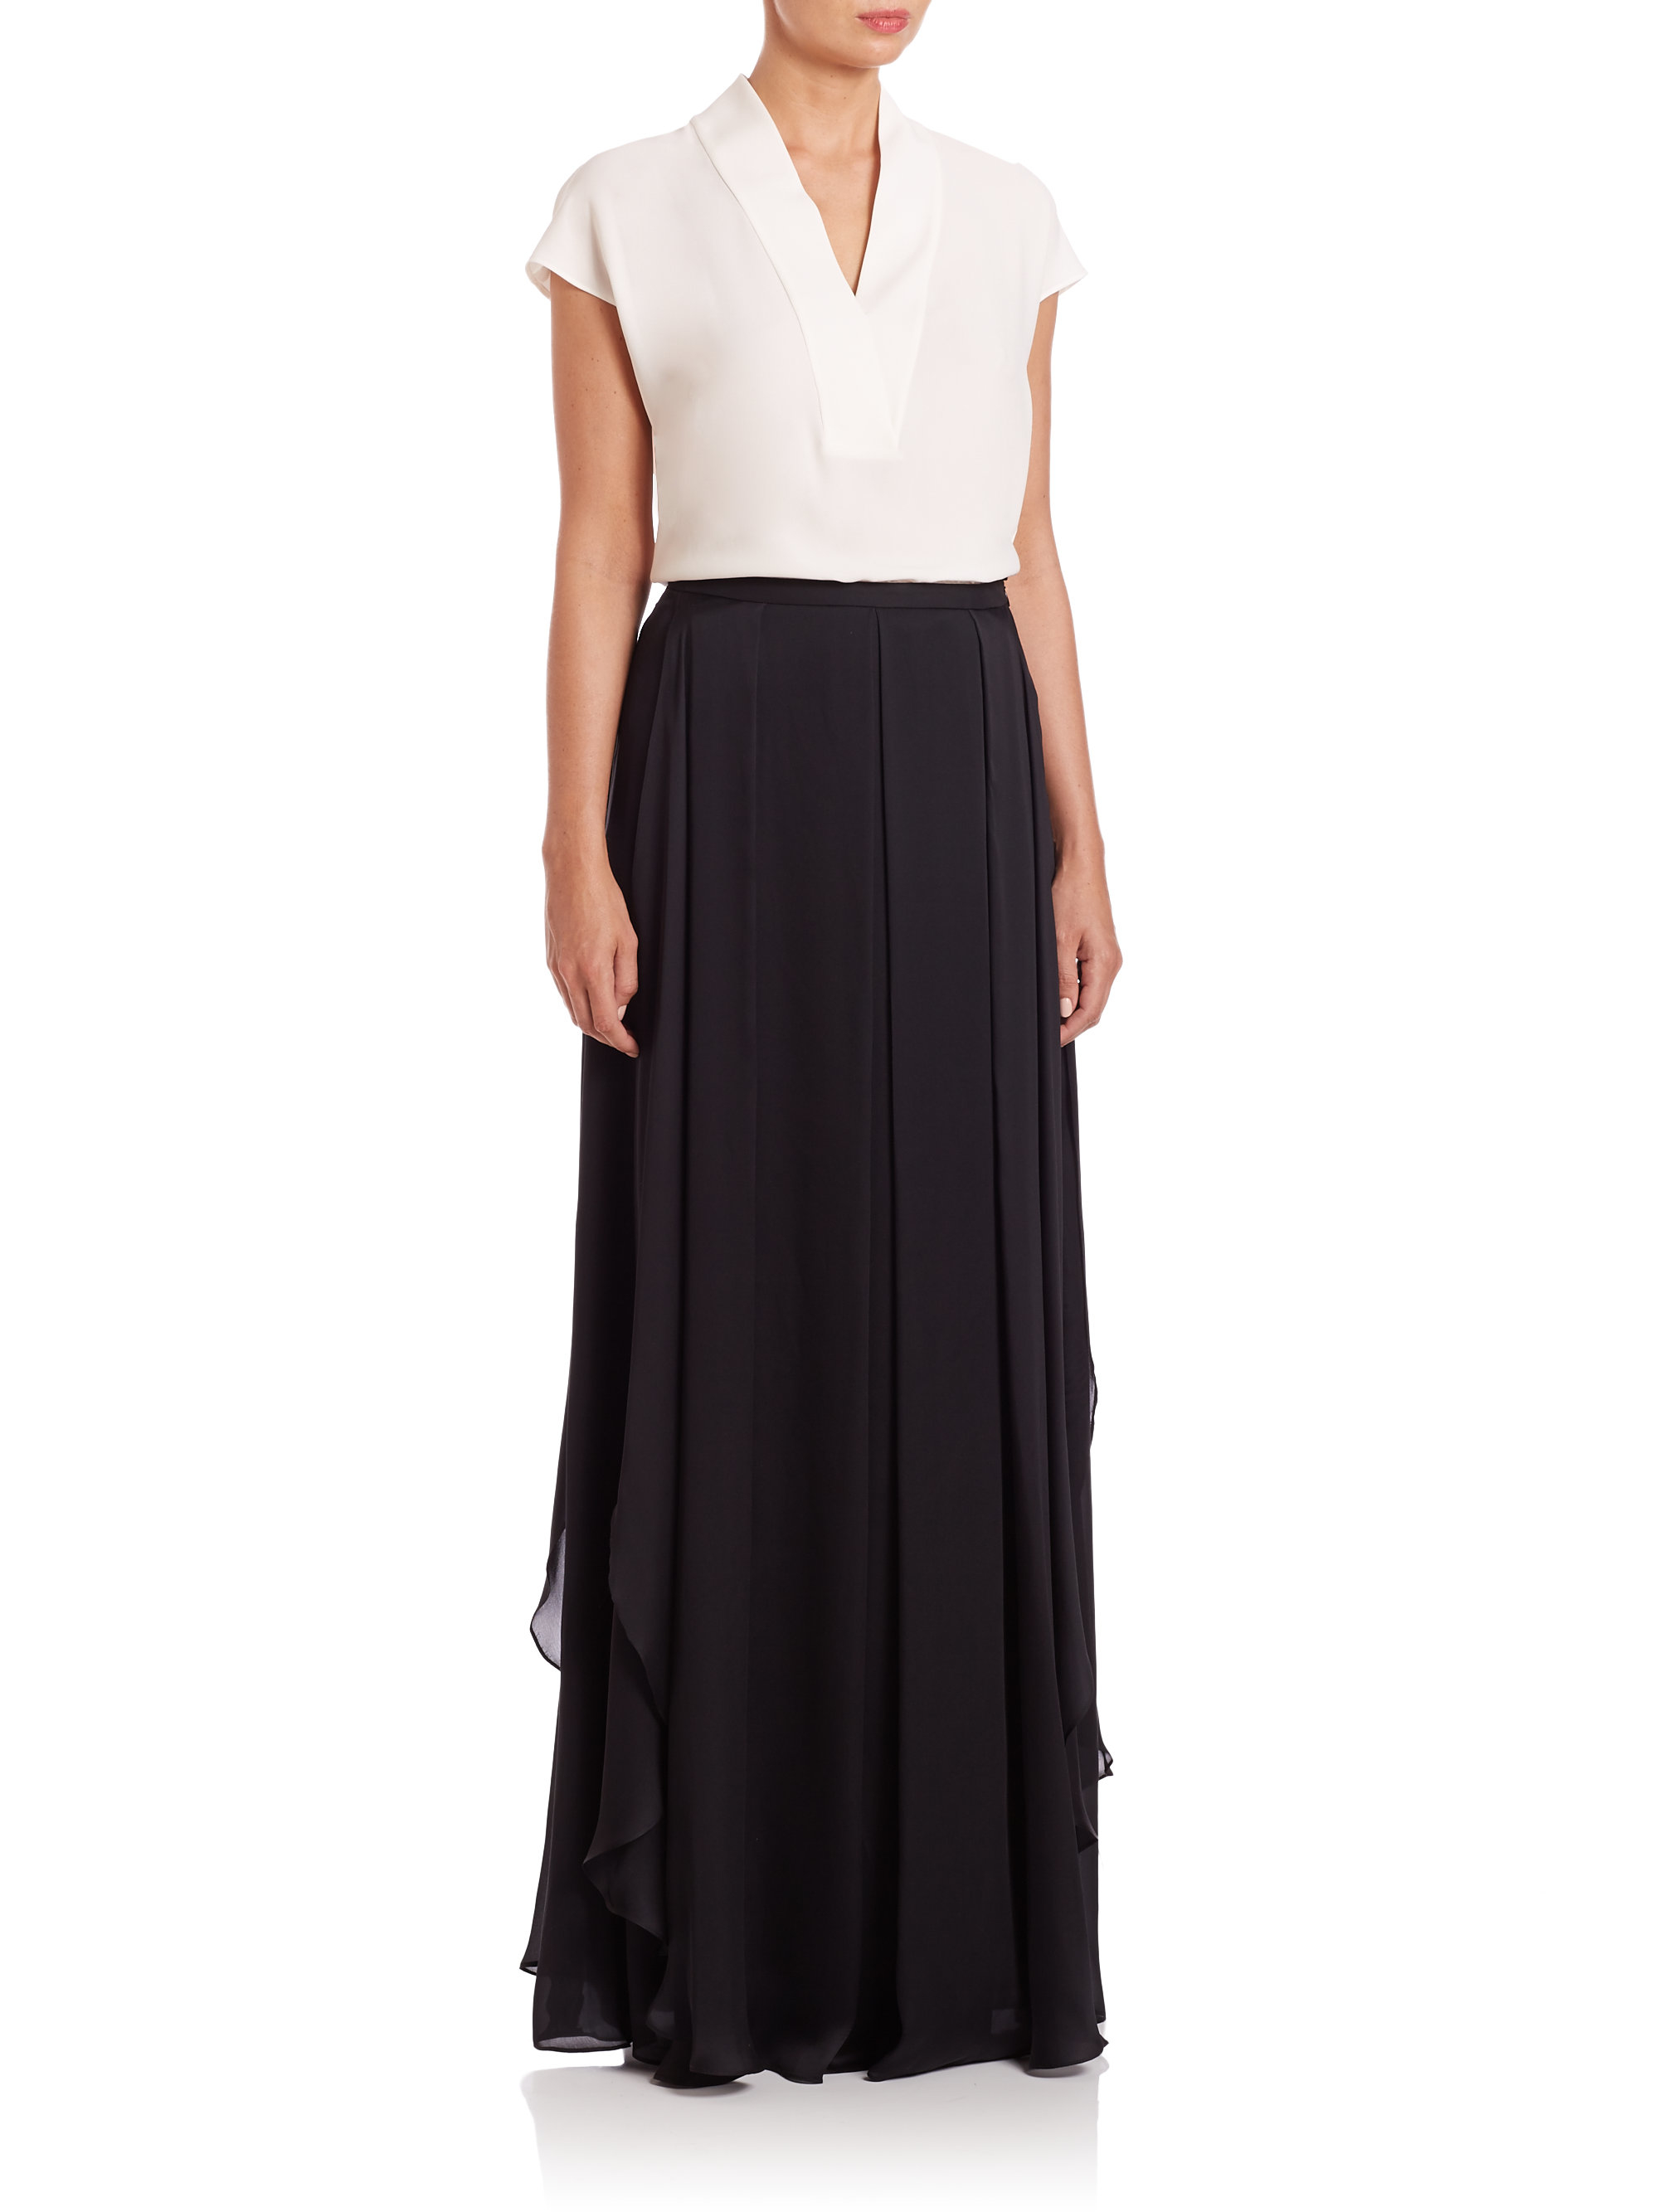 ESCADA Ruffled Silk Chiffon Maxi Skirt in Black - Lyst